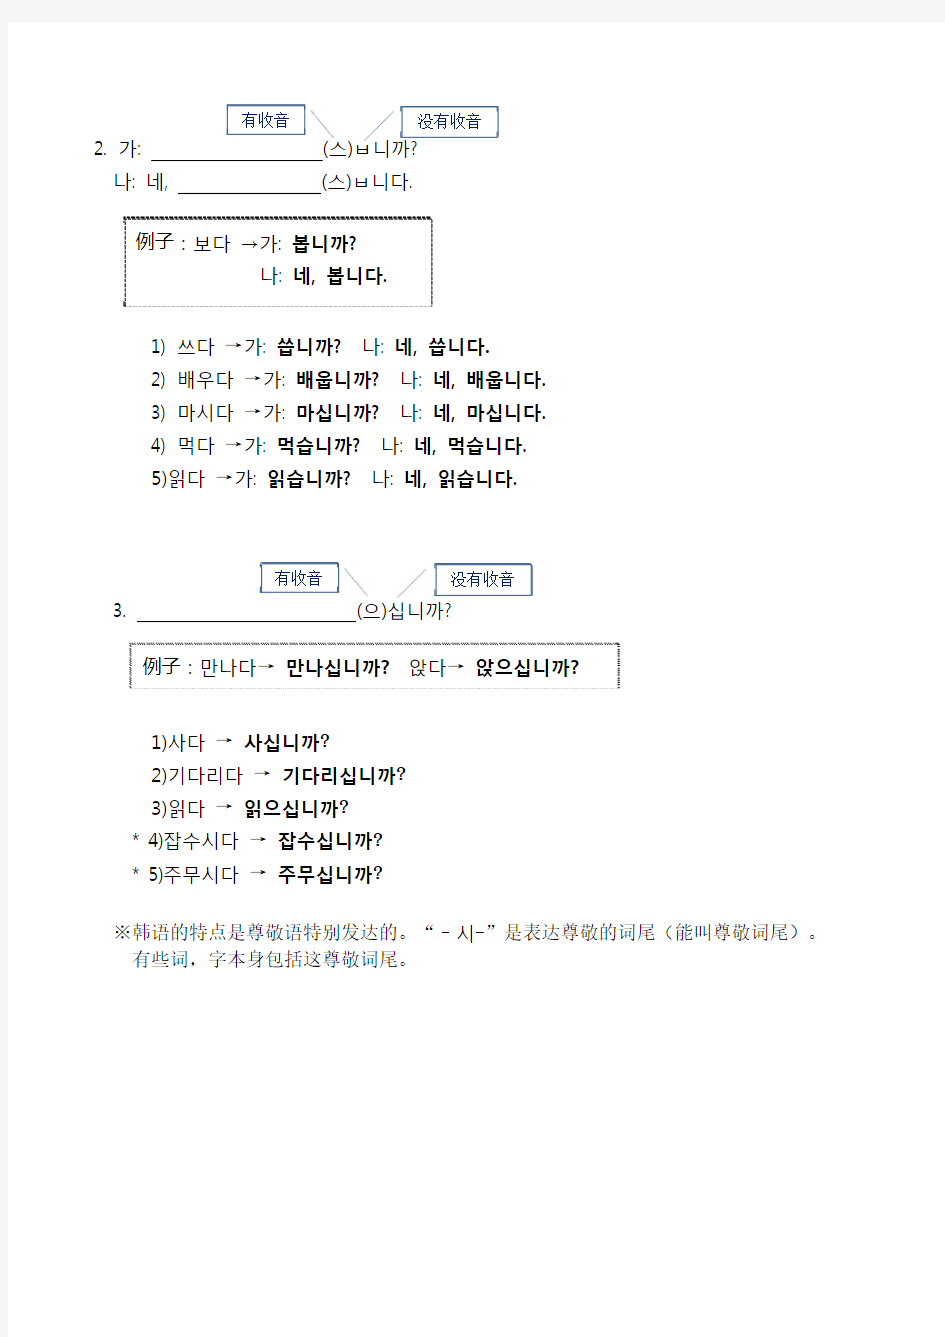 轻松学韩语(初级)练习题的答案